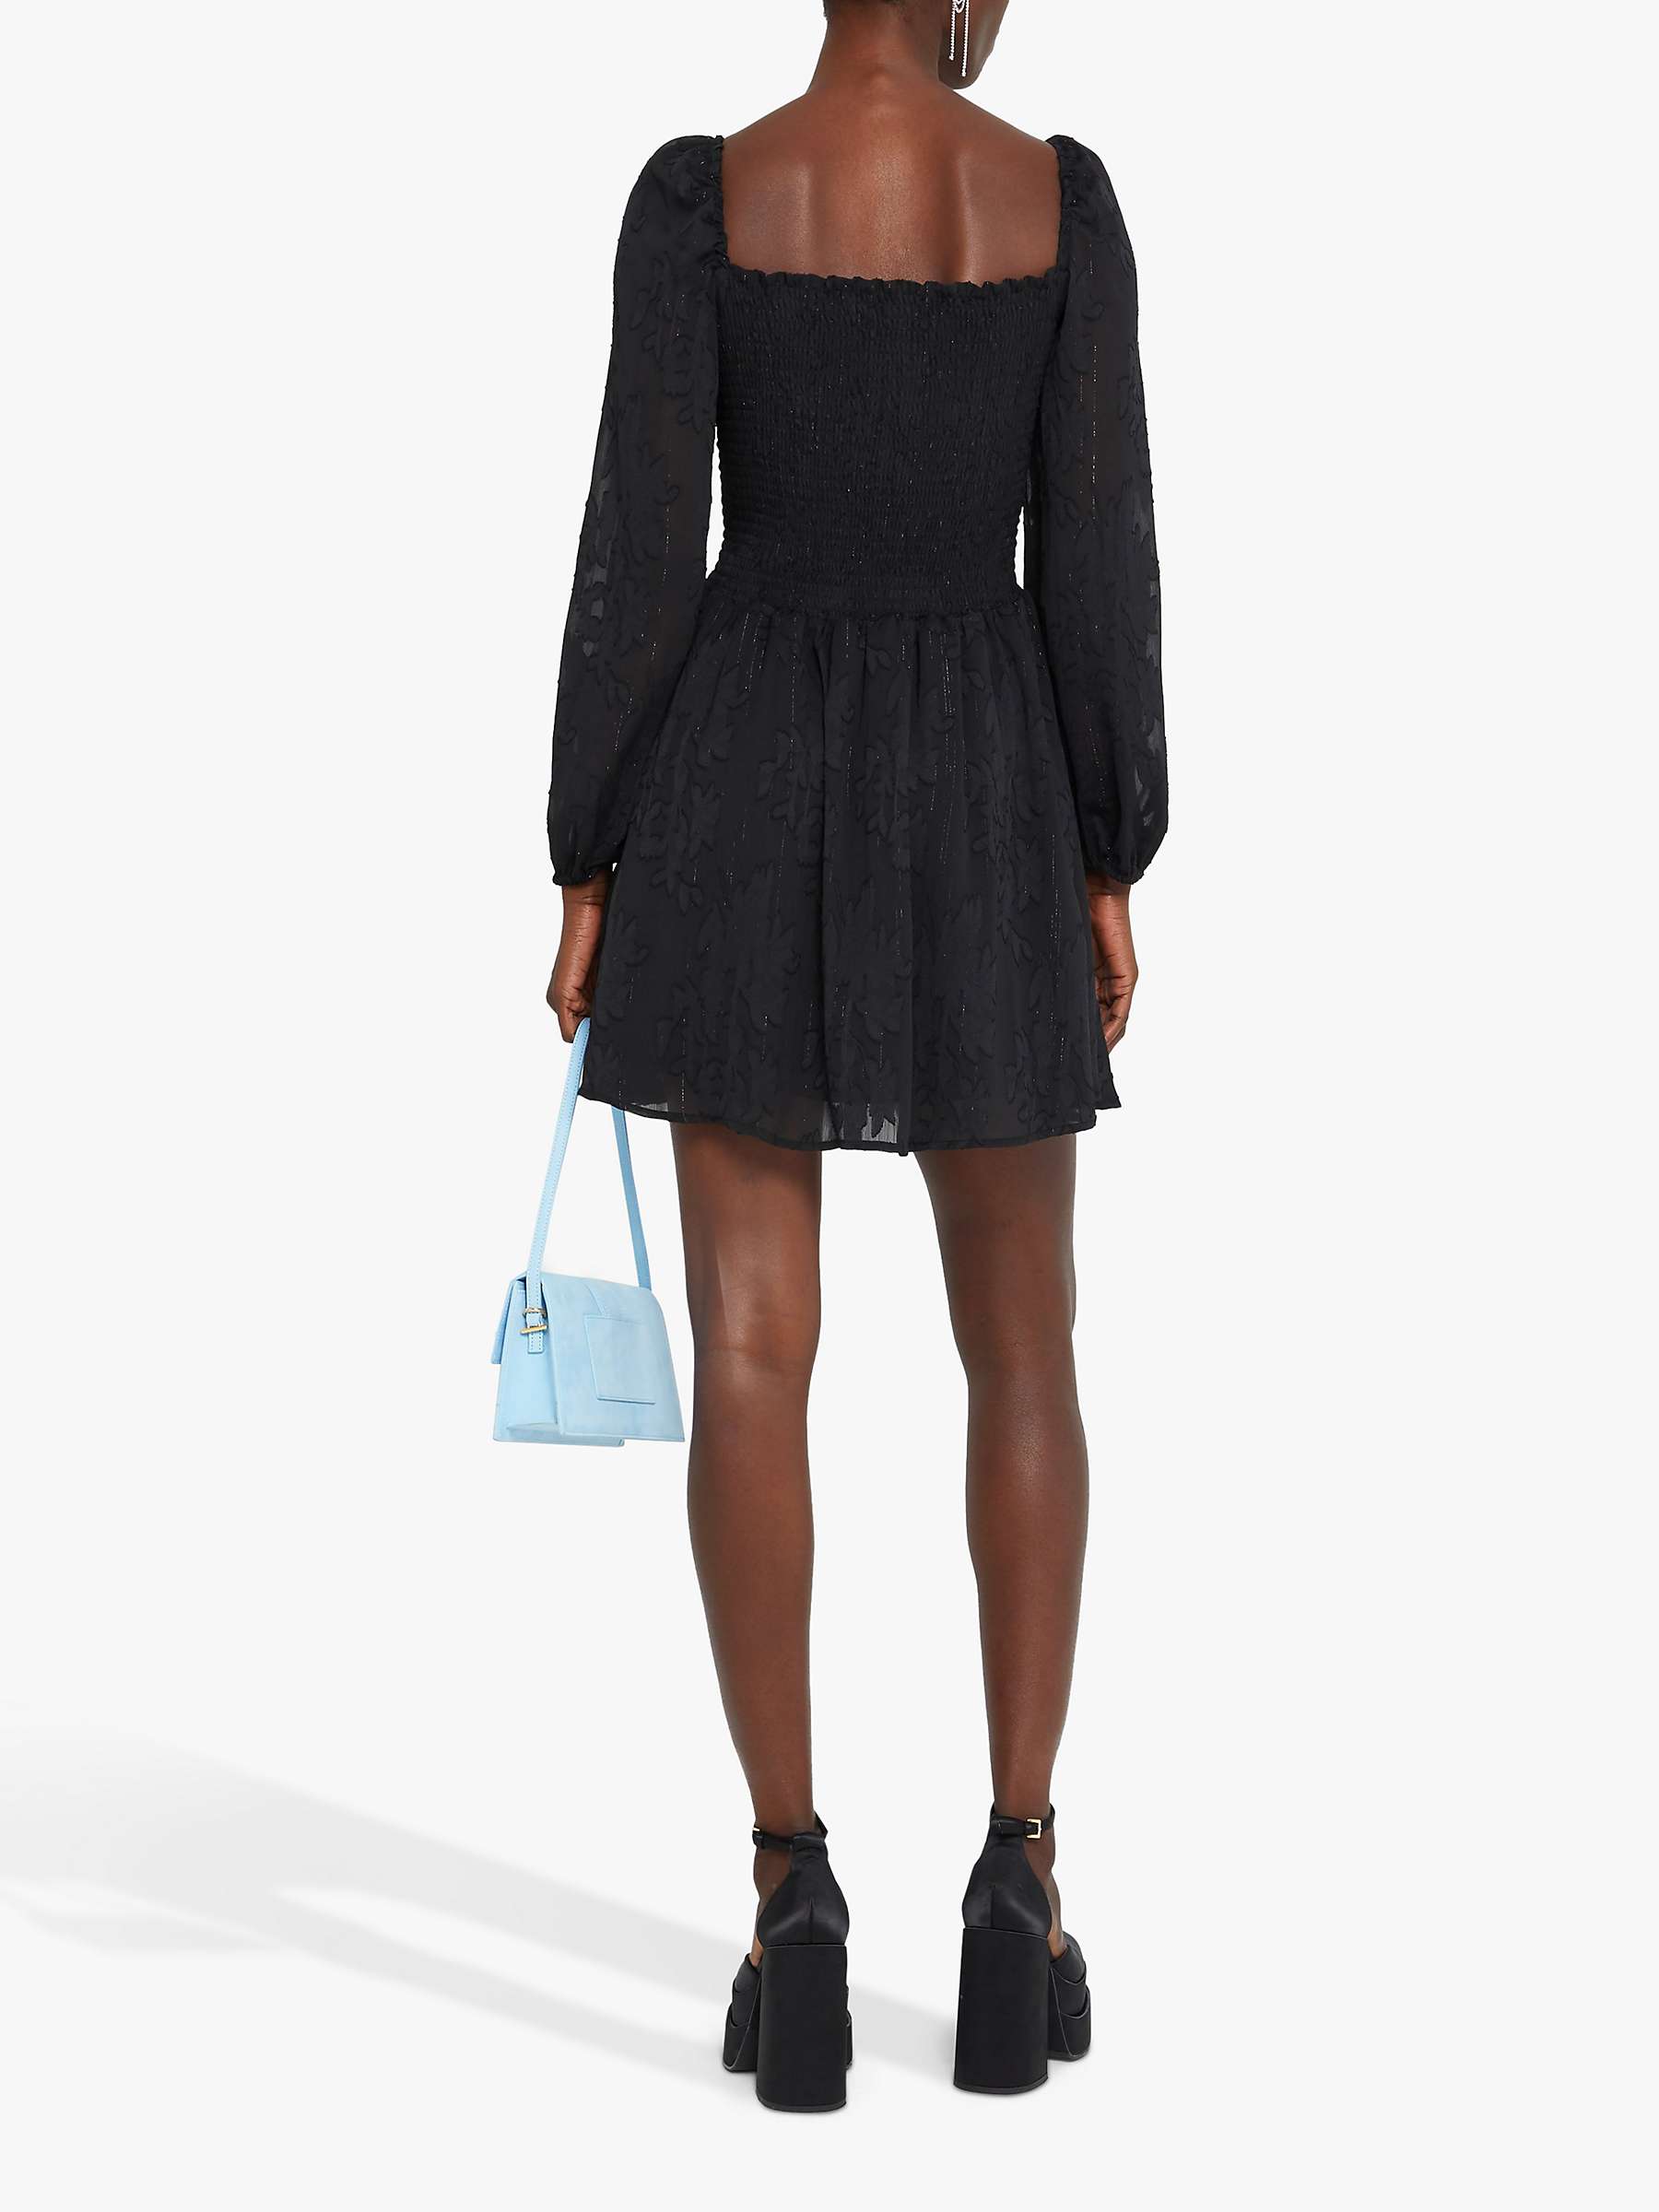 Buy kourt Wren Fitted Bodice Mini Dress, Black Online at johnlewis.com